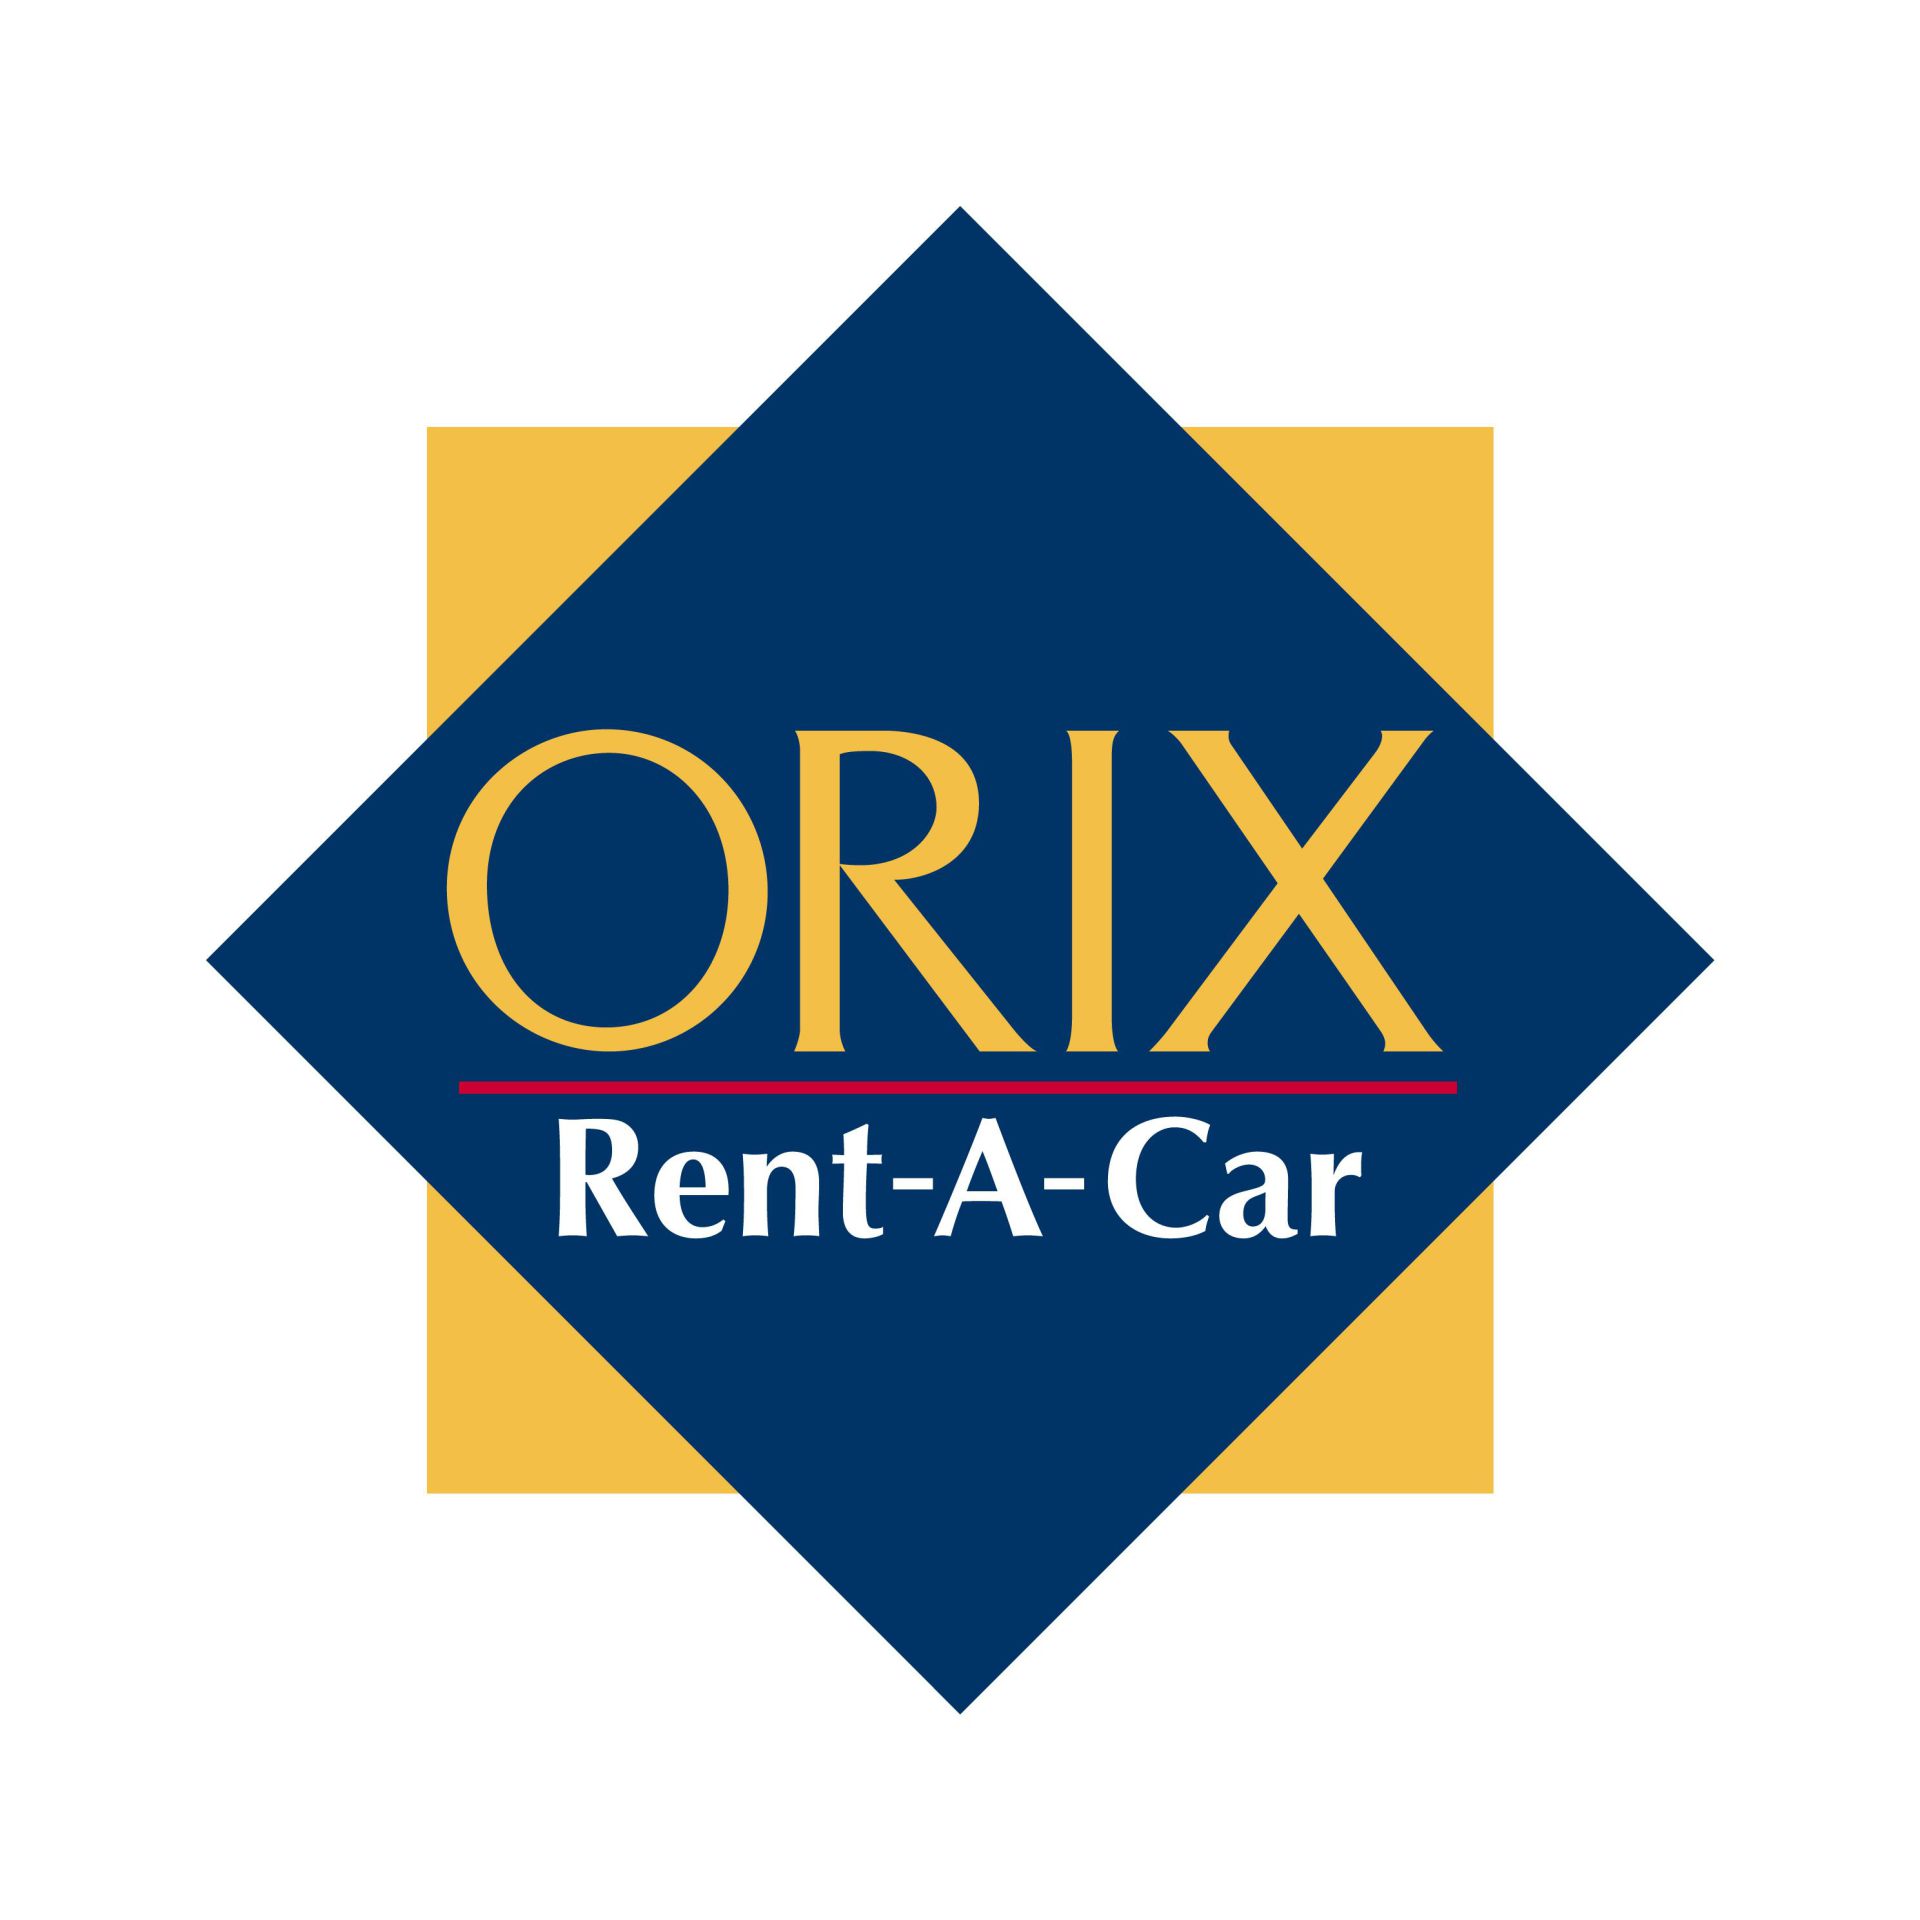 ORIX Rent-A-Car Befu Counter